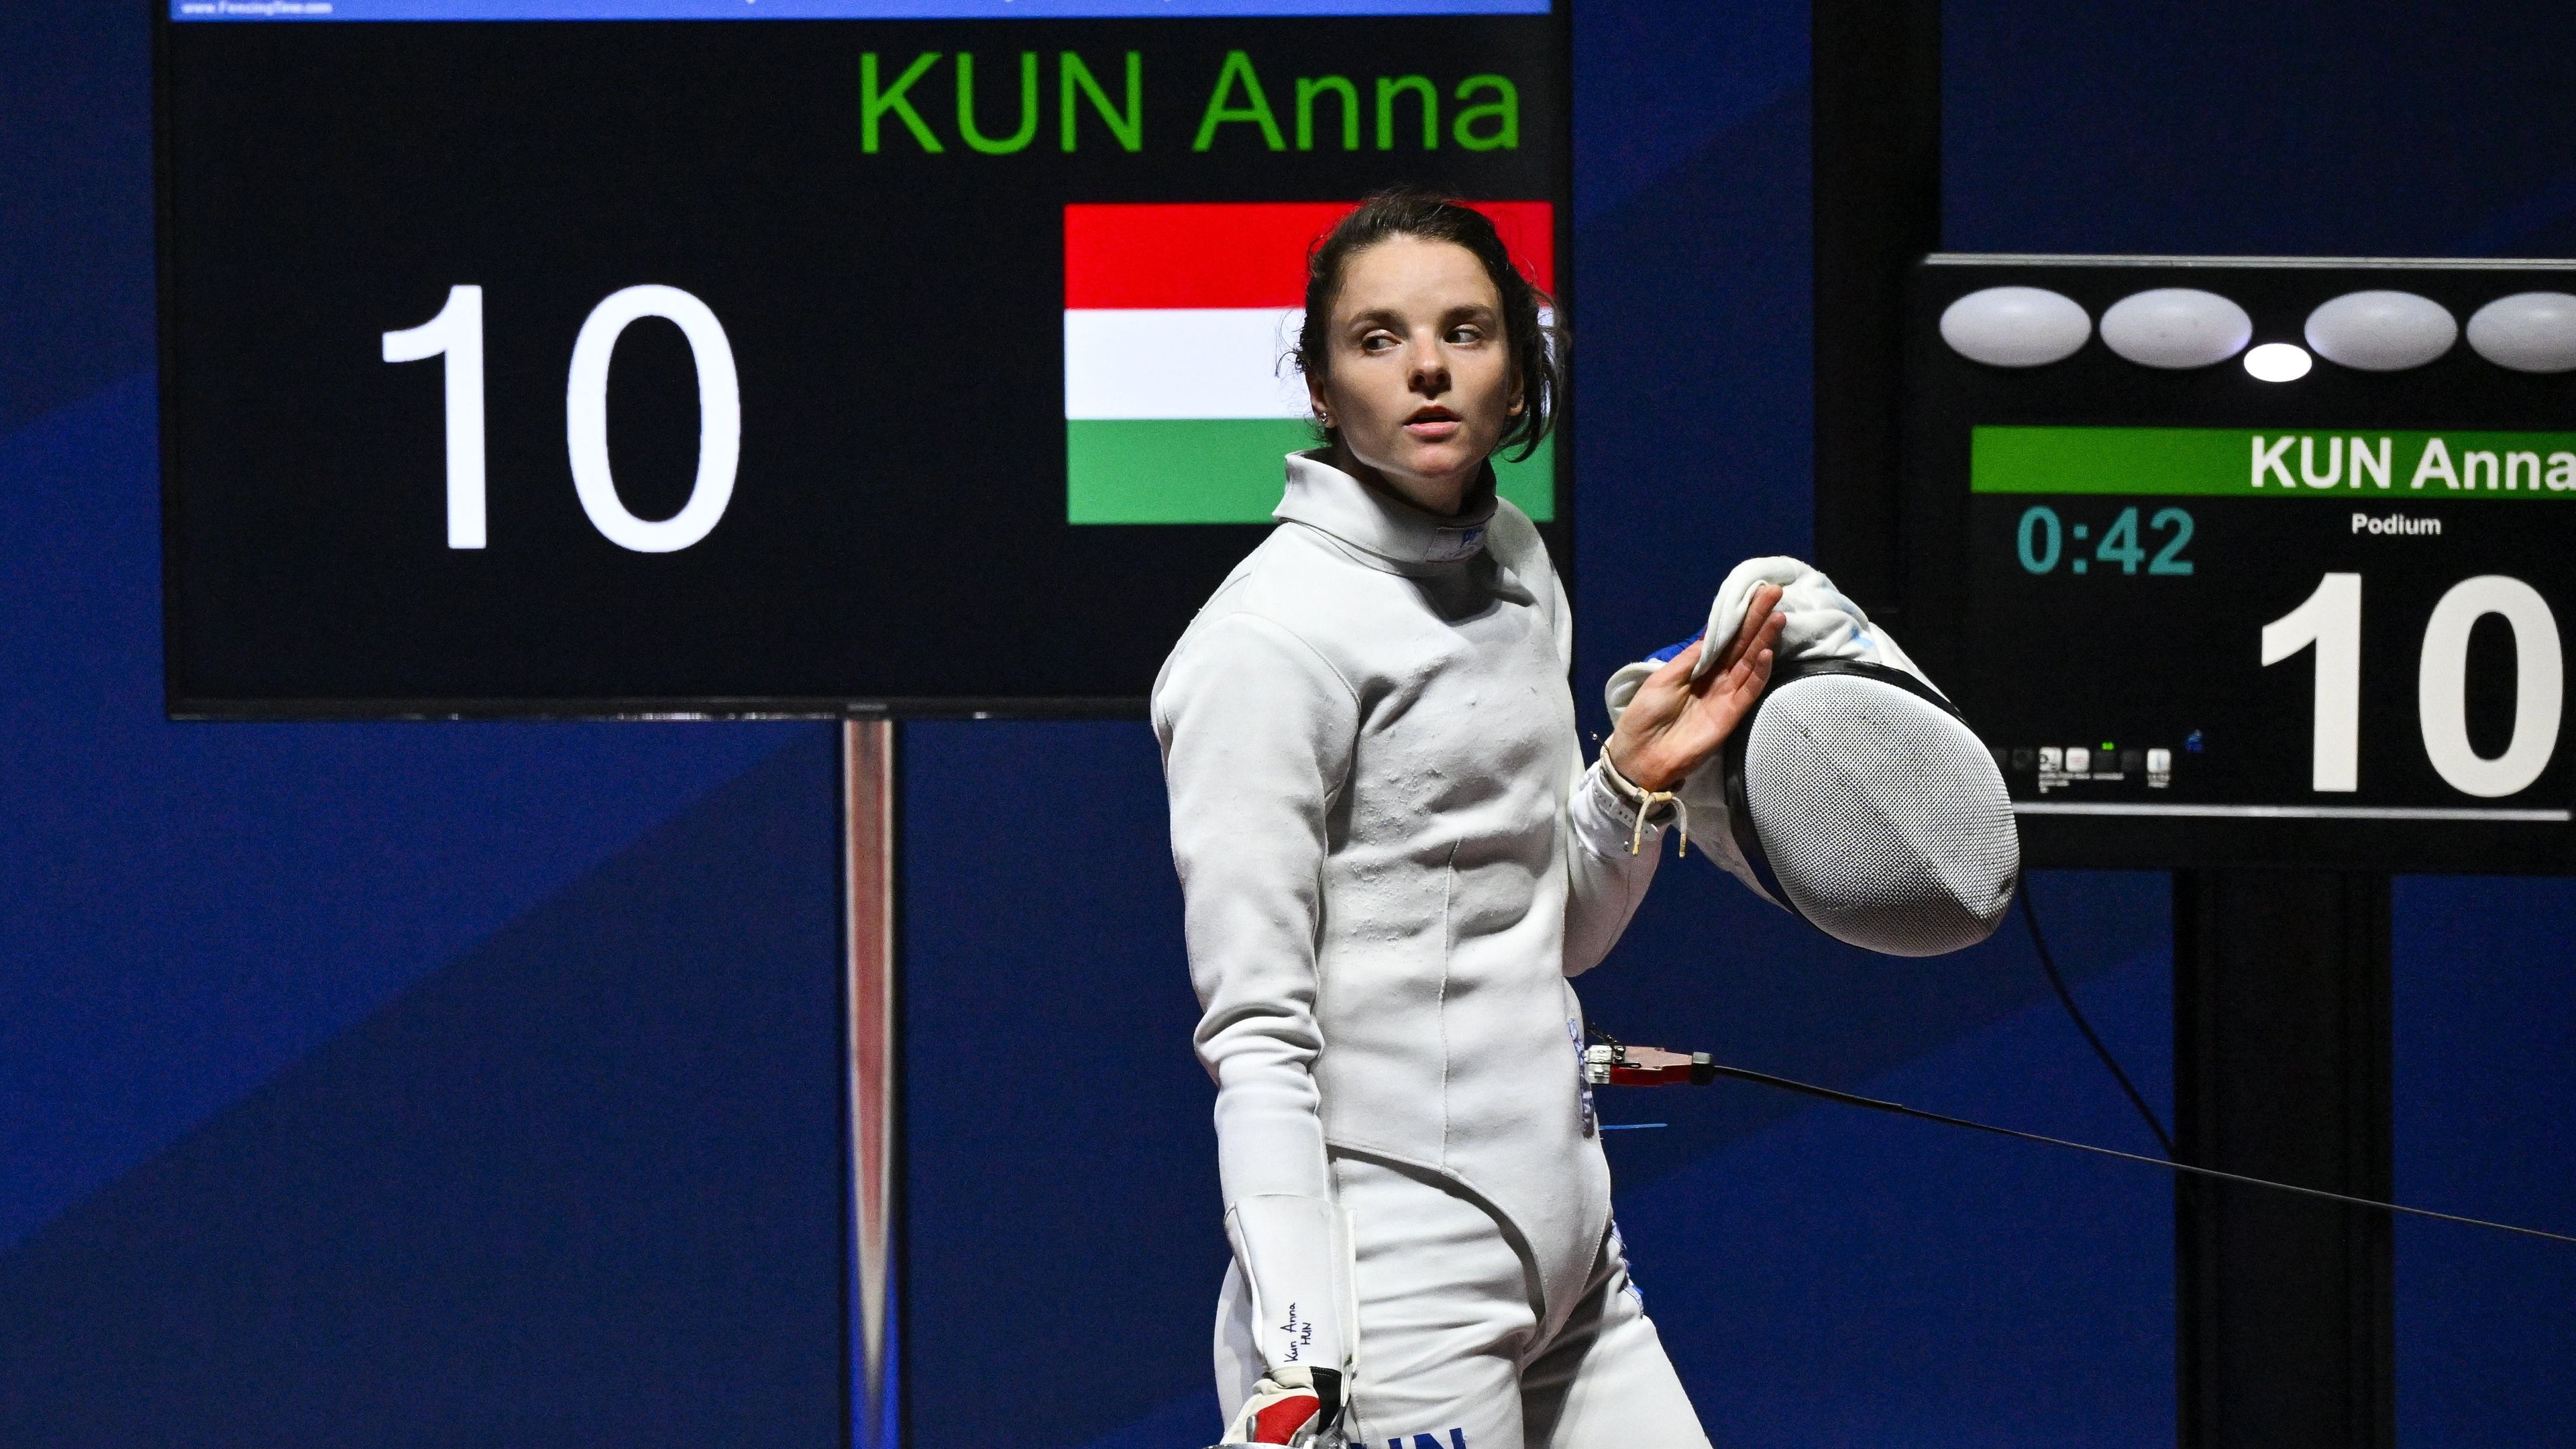 Kun Anna a női párbajtőrözők versenyének elődöntője után az Európa Játékokon a krakkói Tauron Arénában 2023. június 26-án. MTI/Czeglédi Zsolt